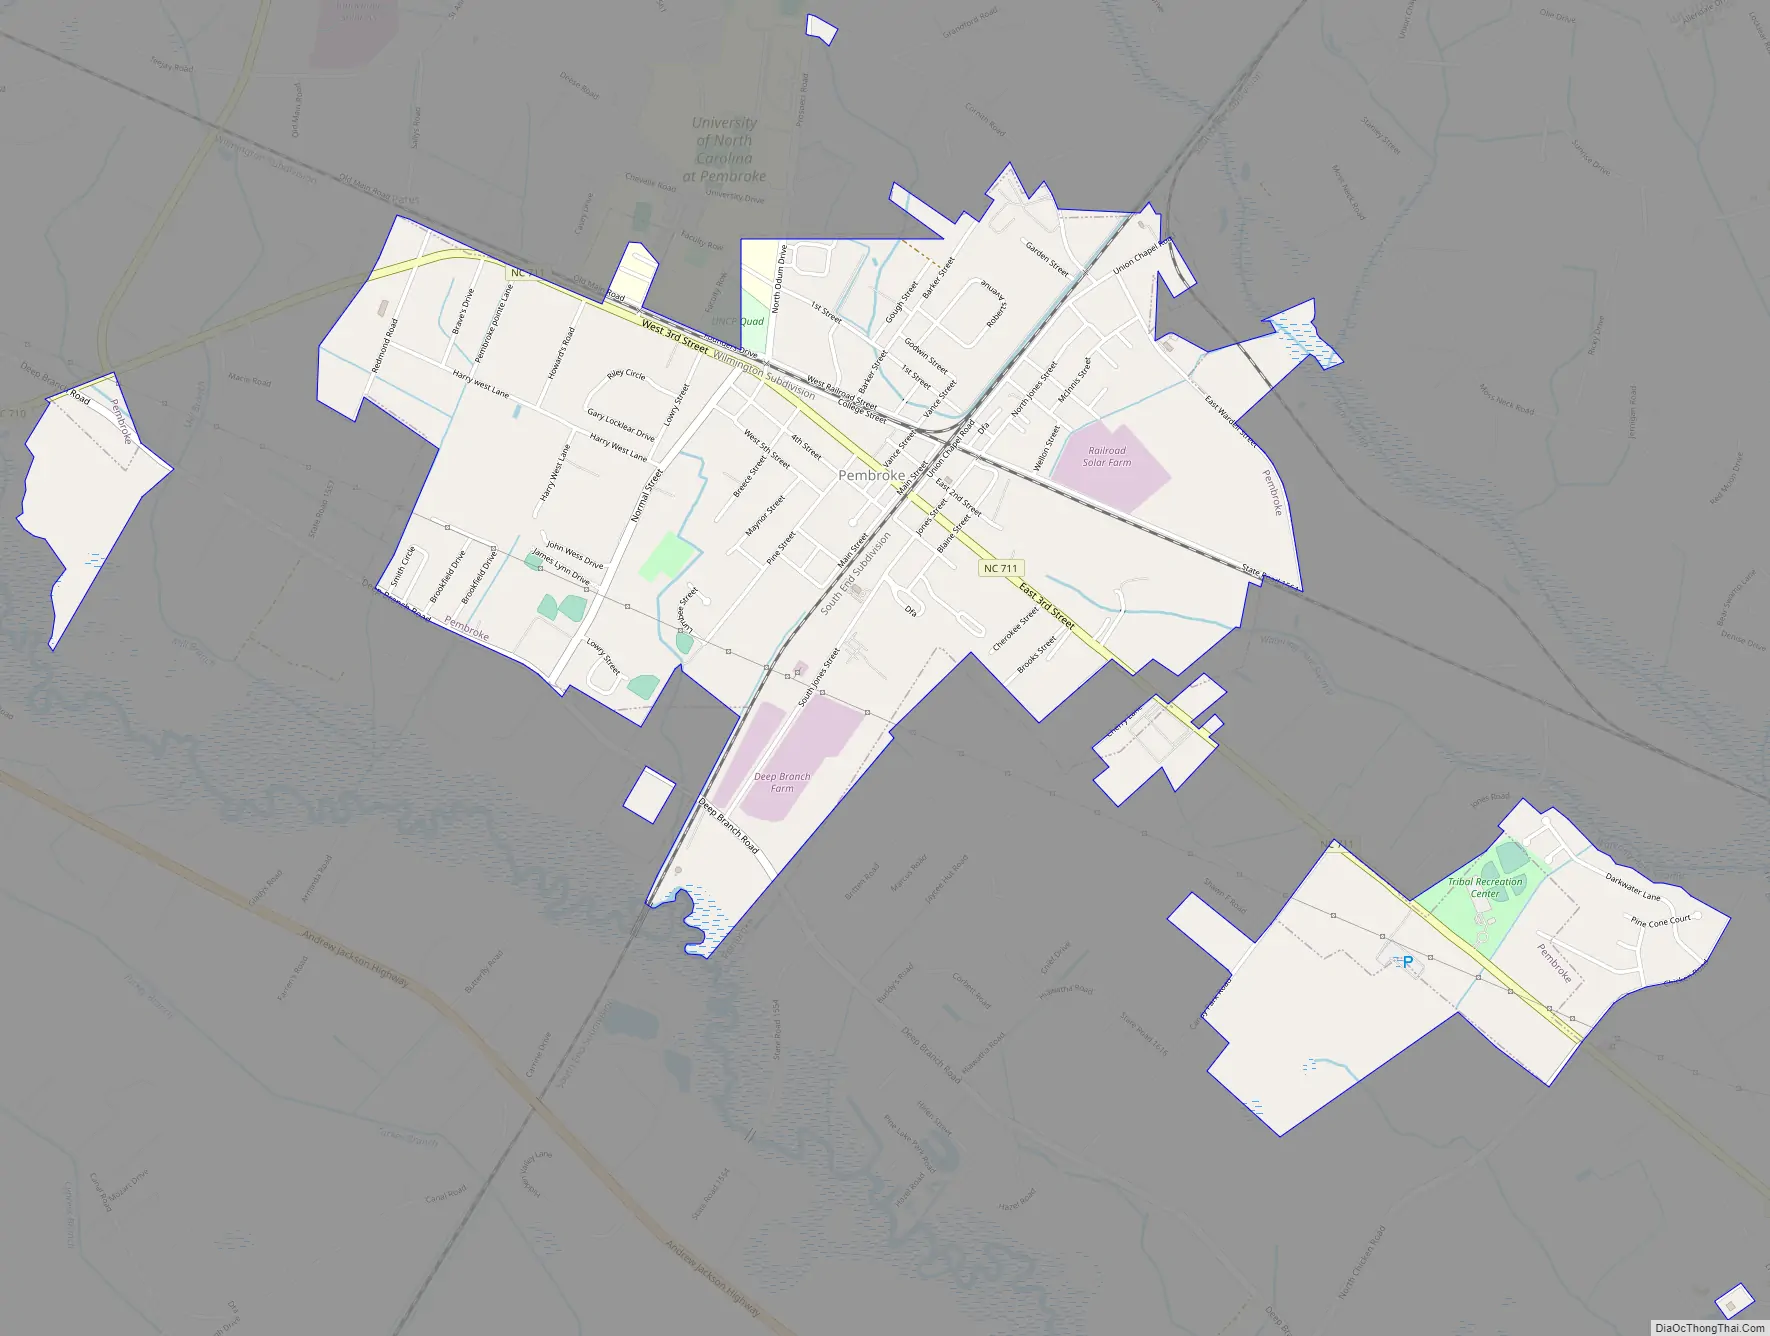 Map of Pembroke town, North Carolina